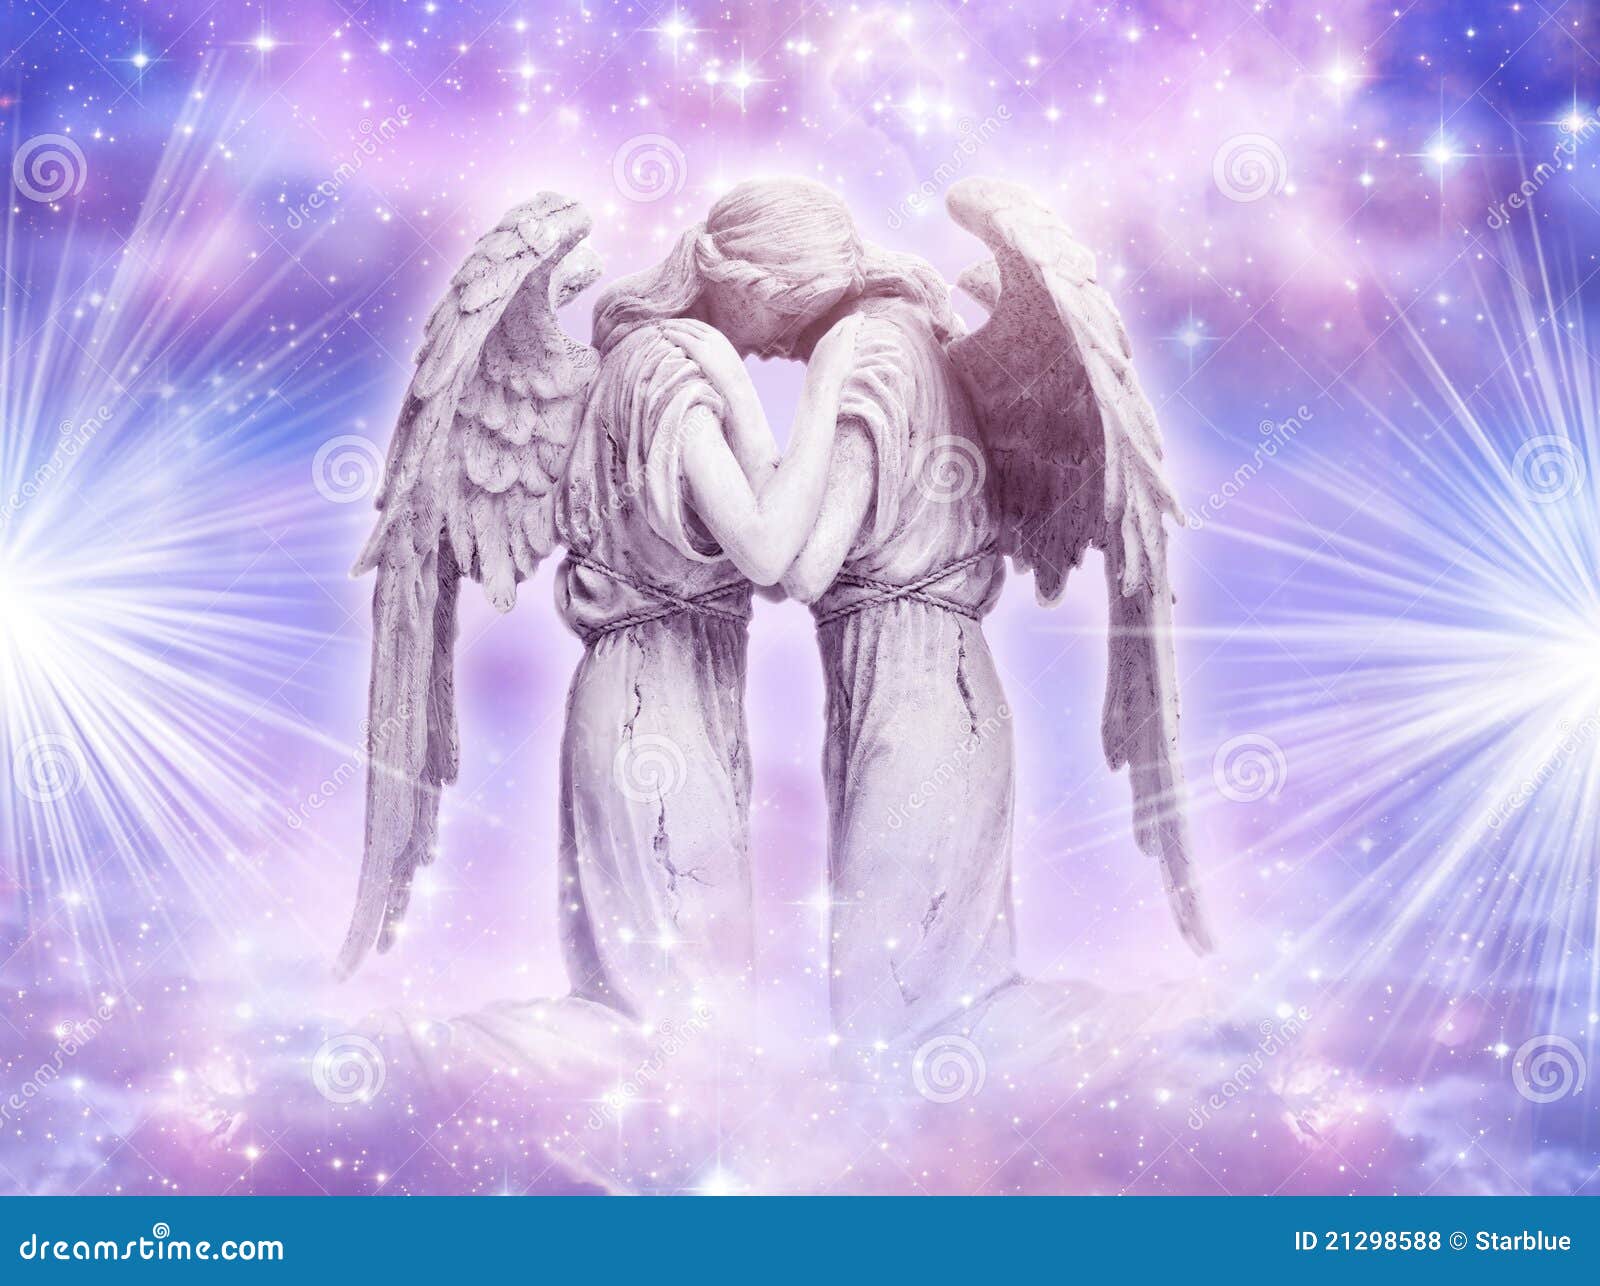 De liefde van engel stock Illustration goddelijk - 21298588